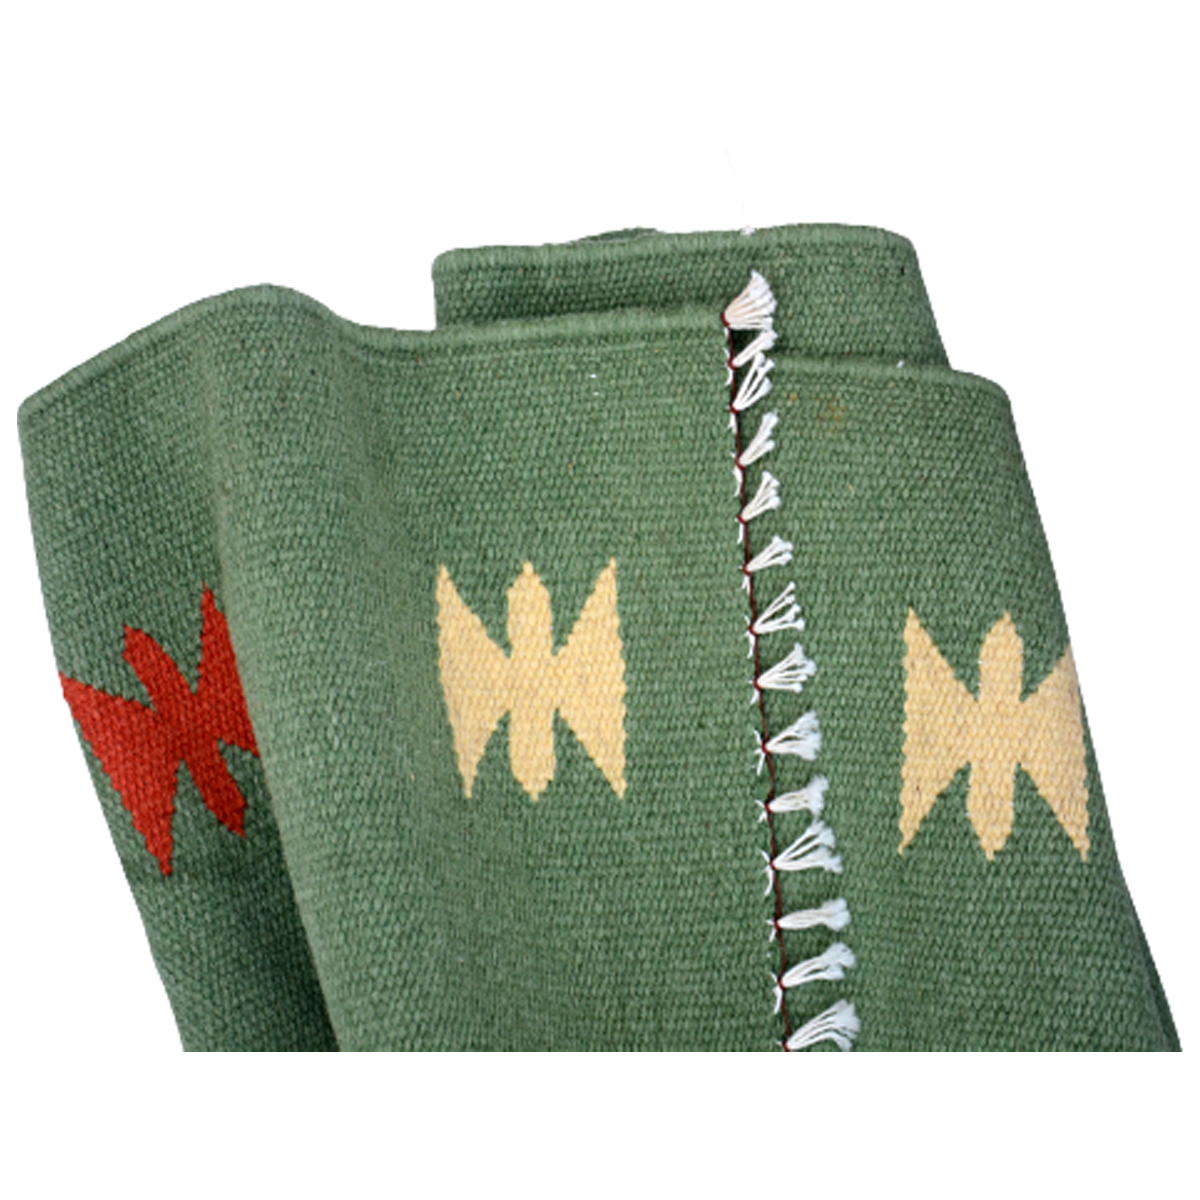 Vintage-Handwoven-Glade-Green-Kilim-Rug